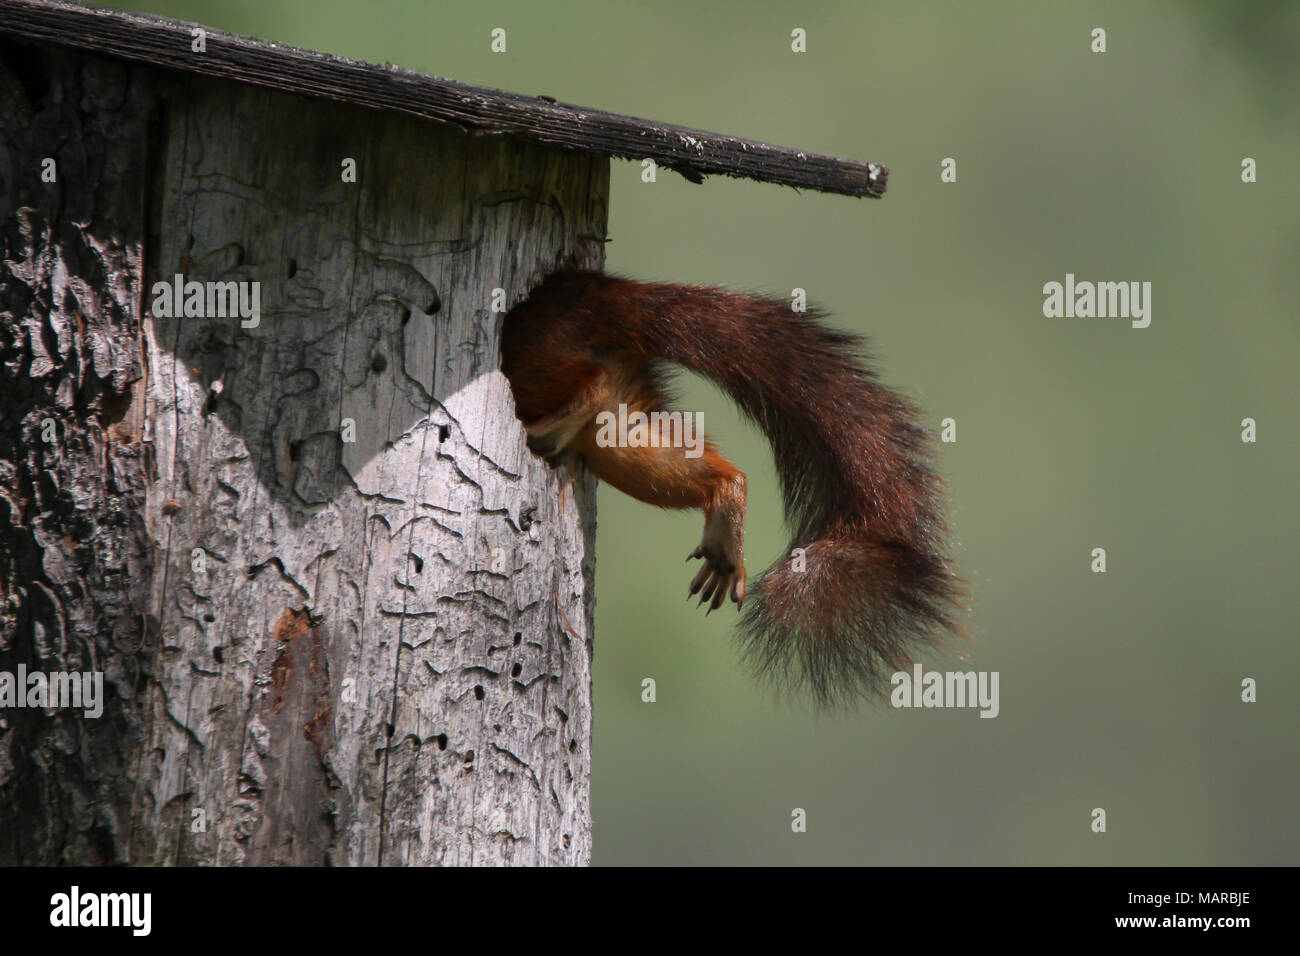 Eichhörnchen (Sciurus vulgaris). Mutter klettern in den Nistkasten. Dalarna, Schweden Stockfoto